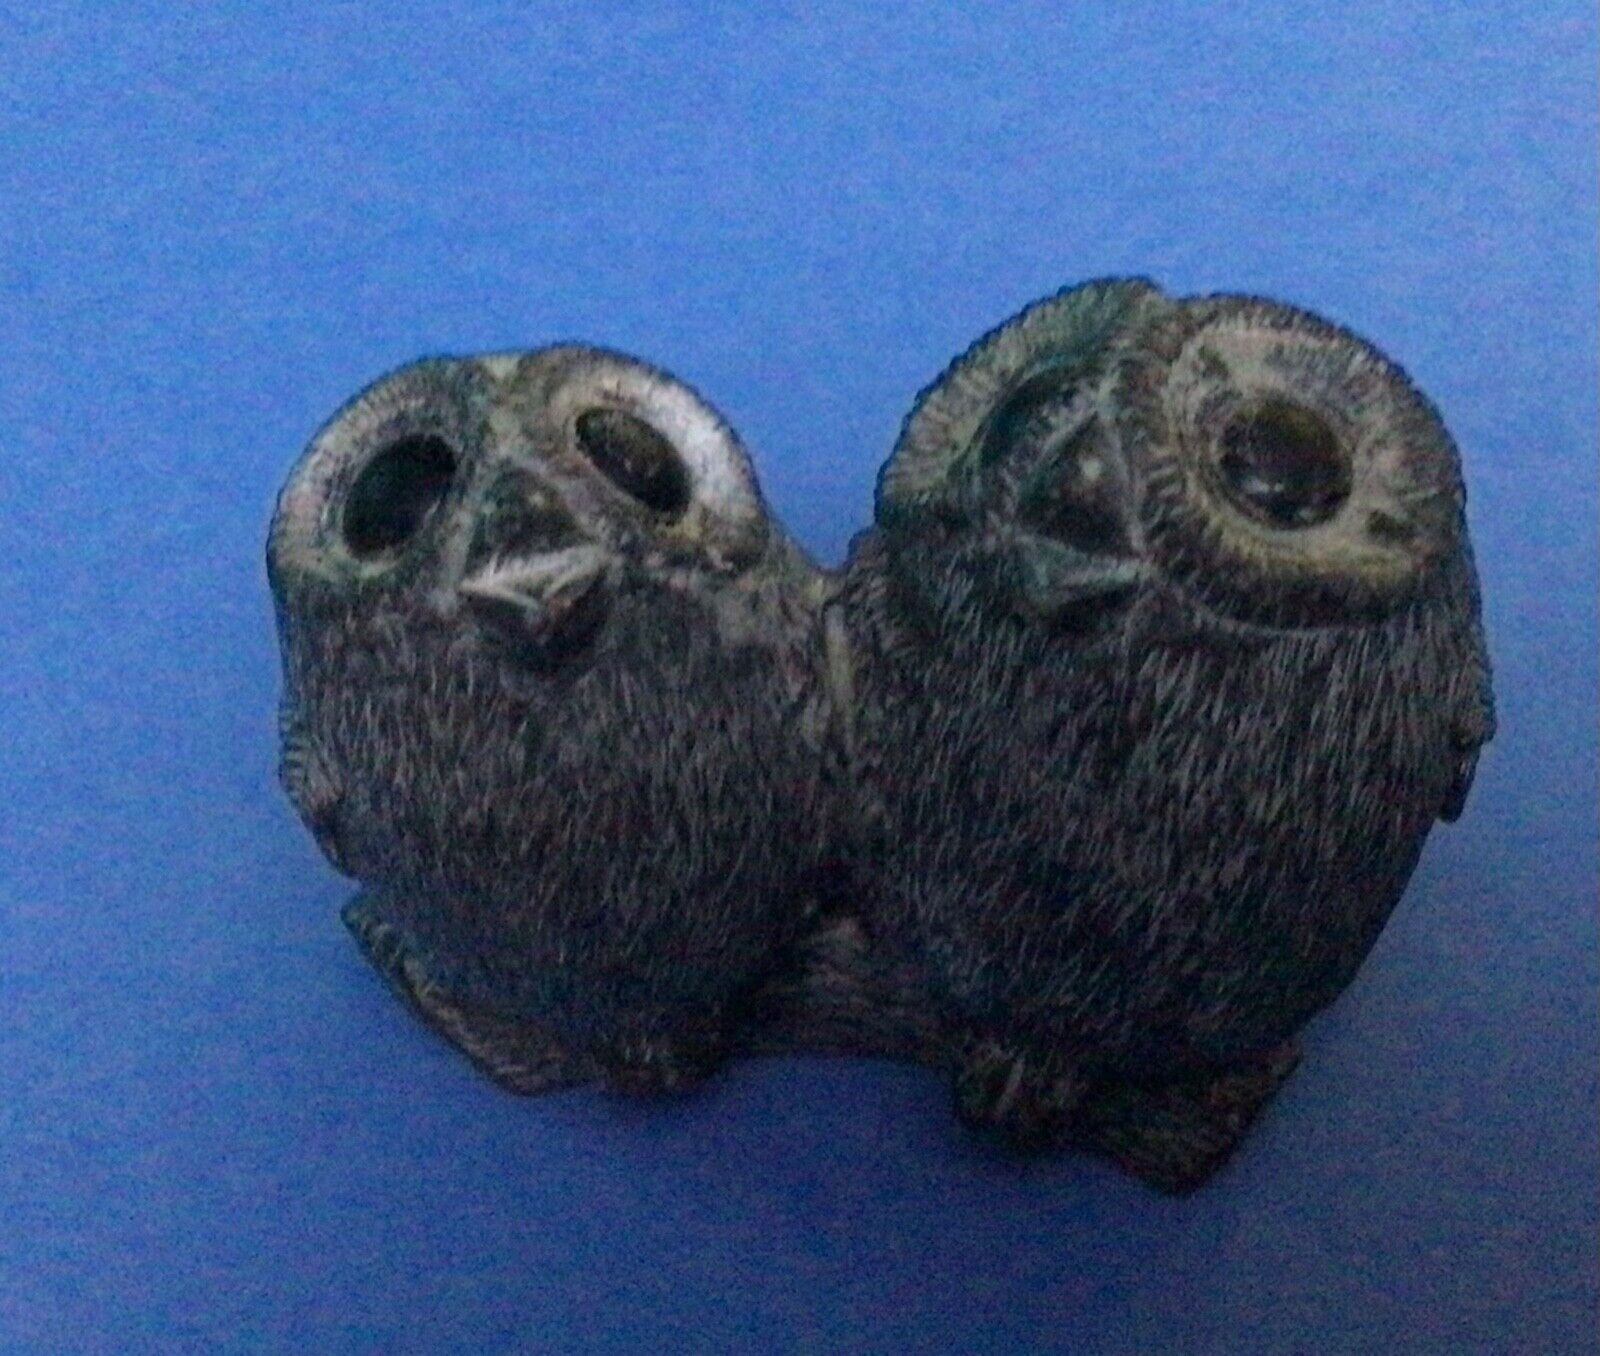 Wolf Originals Two Baby Owls Art Sculpture Figurine Paperweight